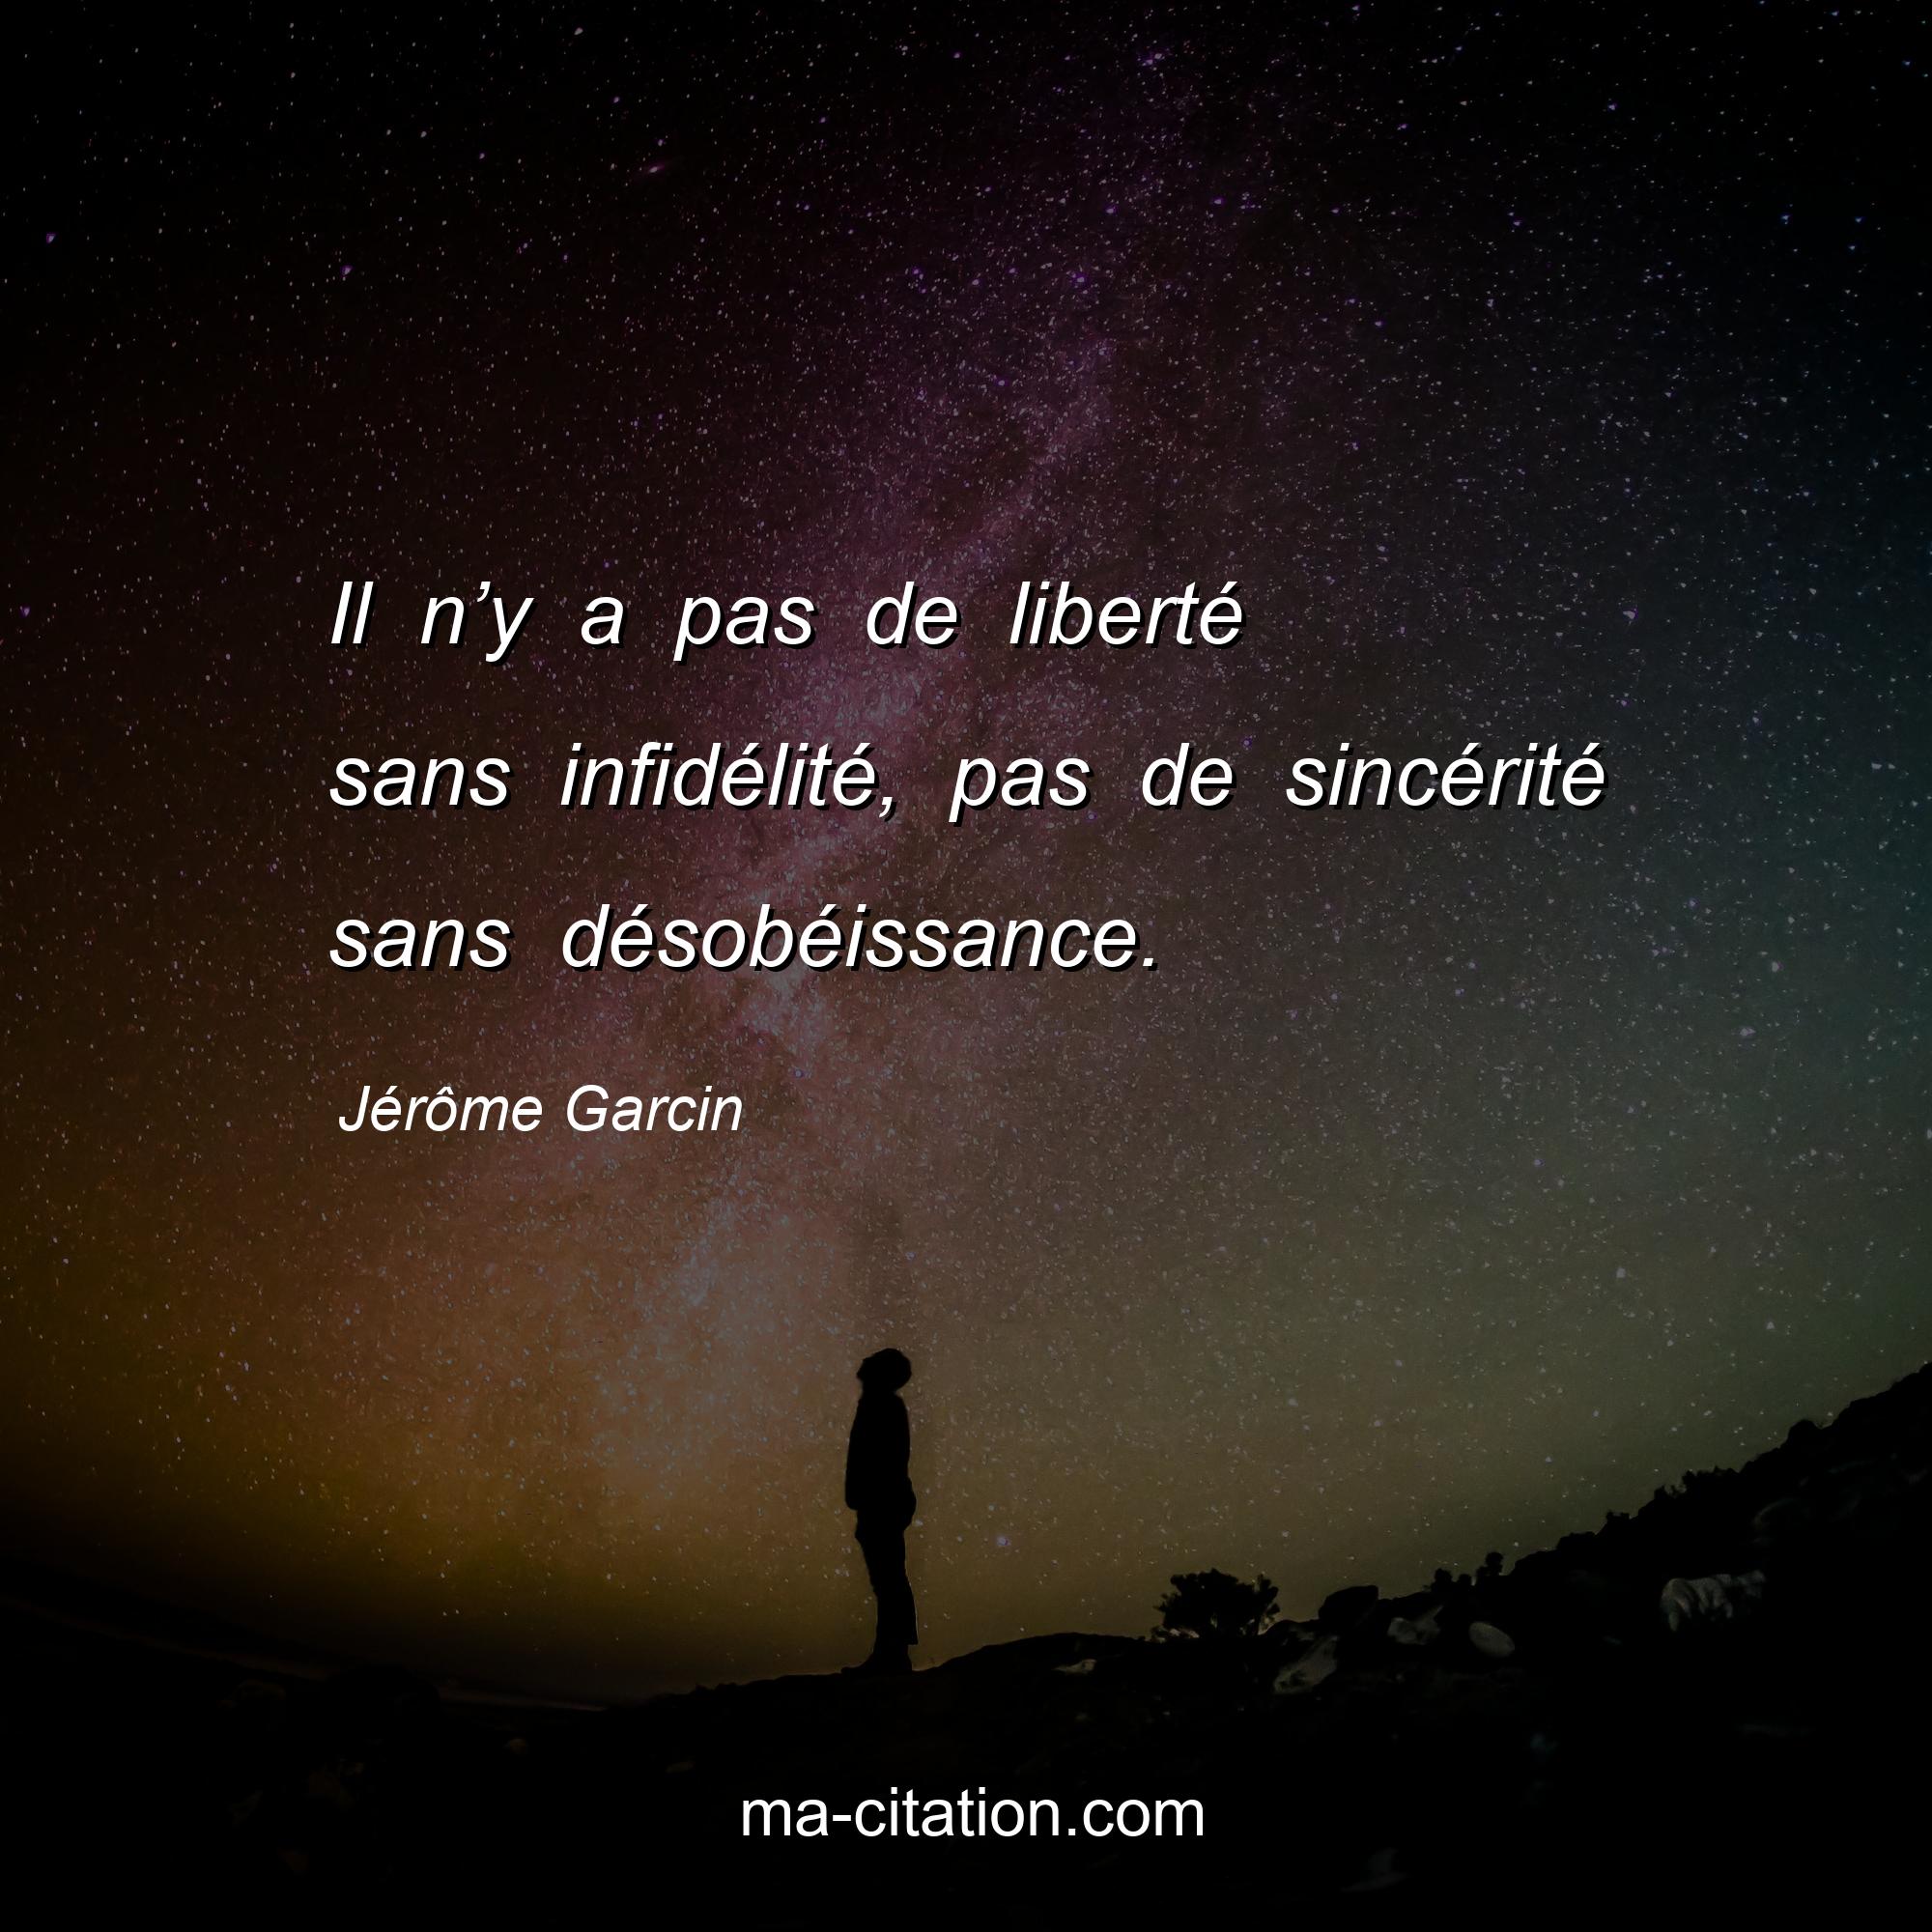 Jérôme Garcin : Il n’y a pas de liberté sans infidélité, pas de sincérité sans désobéissance.